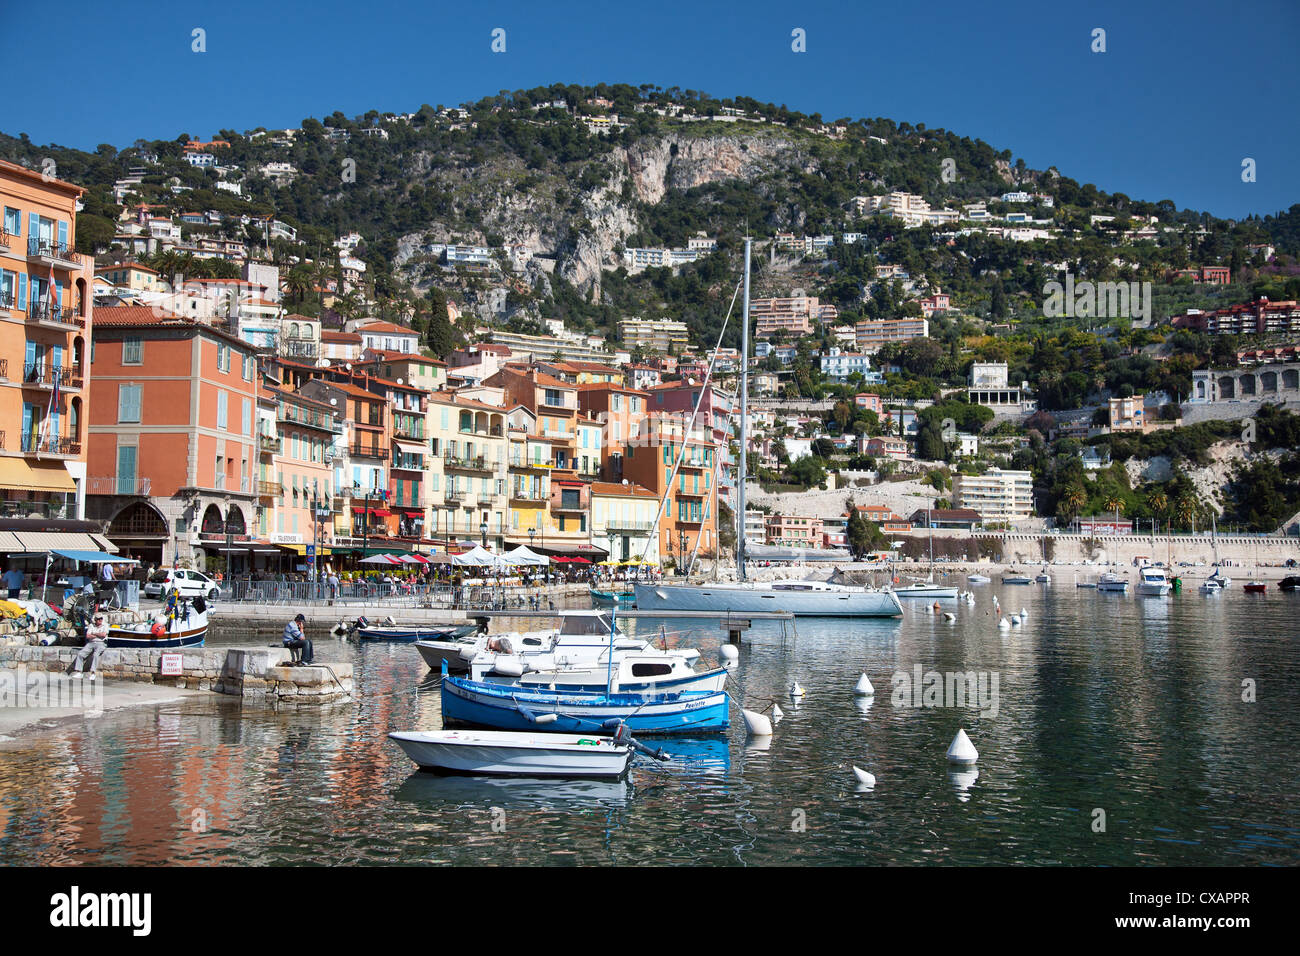 Gli edifici colorati lungo waterfront, Villefranche, Alpes-Maritimes, Provence-Alpes-Côte d'Azur, Costa Azzurra, Francia Foto Stock